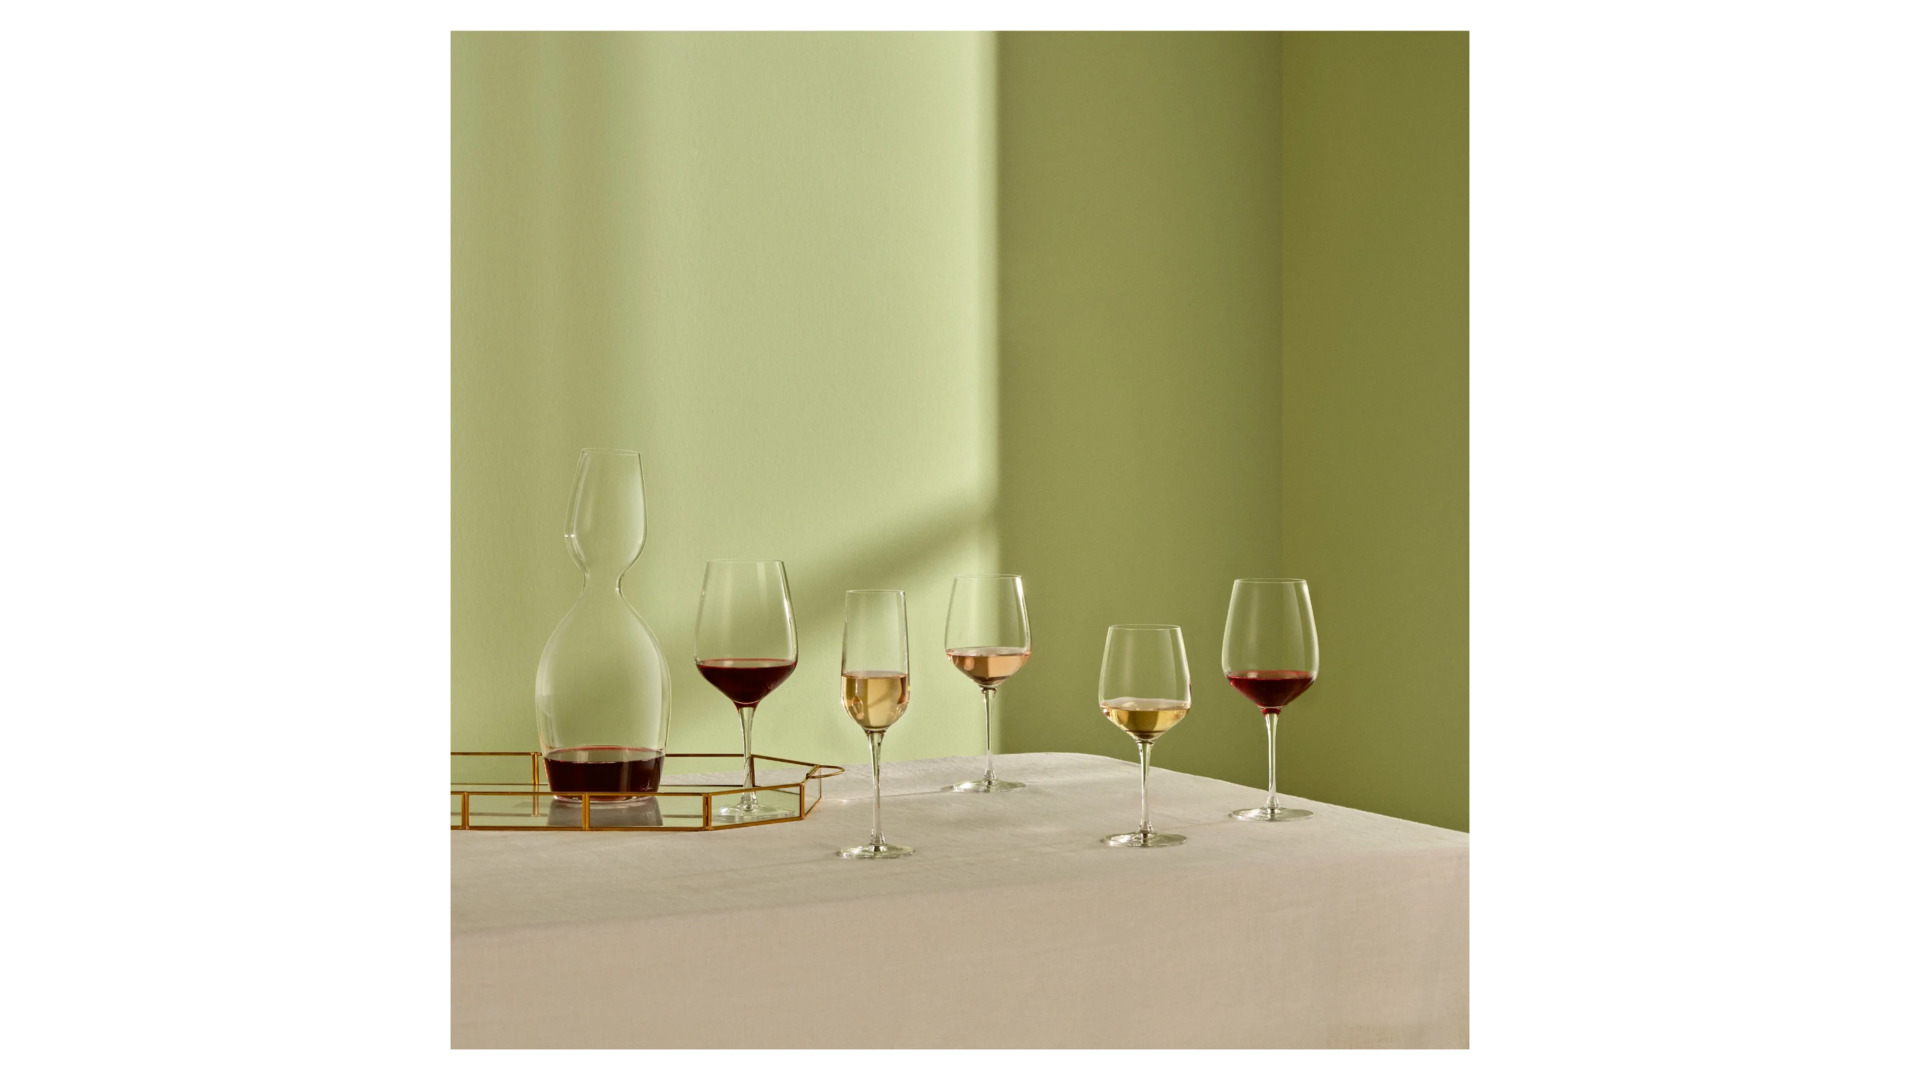 Бокал для белого вина Nude Glass Совершенство 320 мл, стекло хрустальное